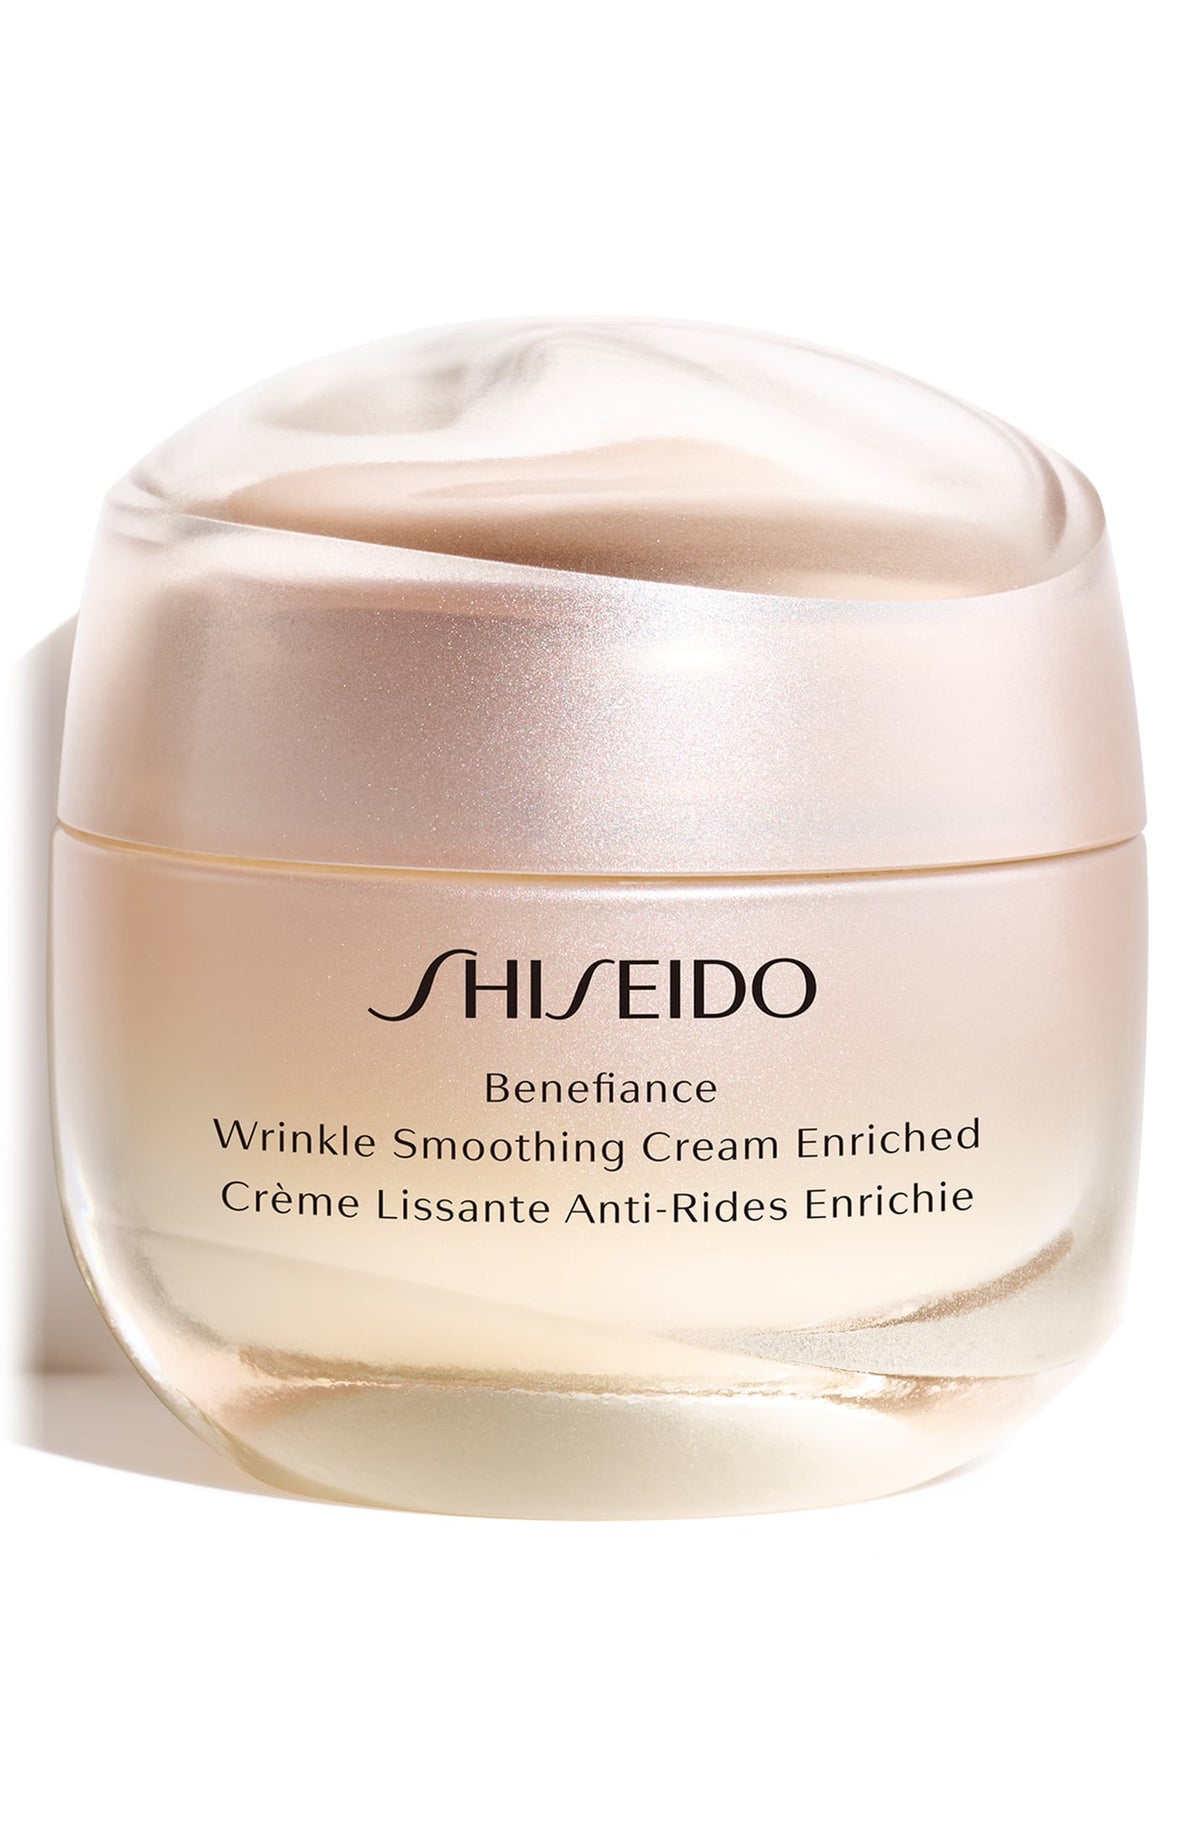 Shiseido Benefiance Wrinkle Smoothing Cream Enriched, 50 ml - eCosmeticWorld